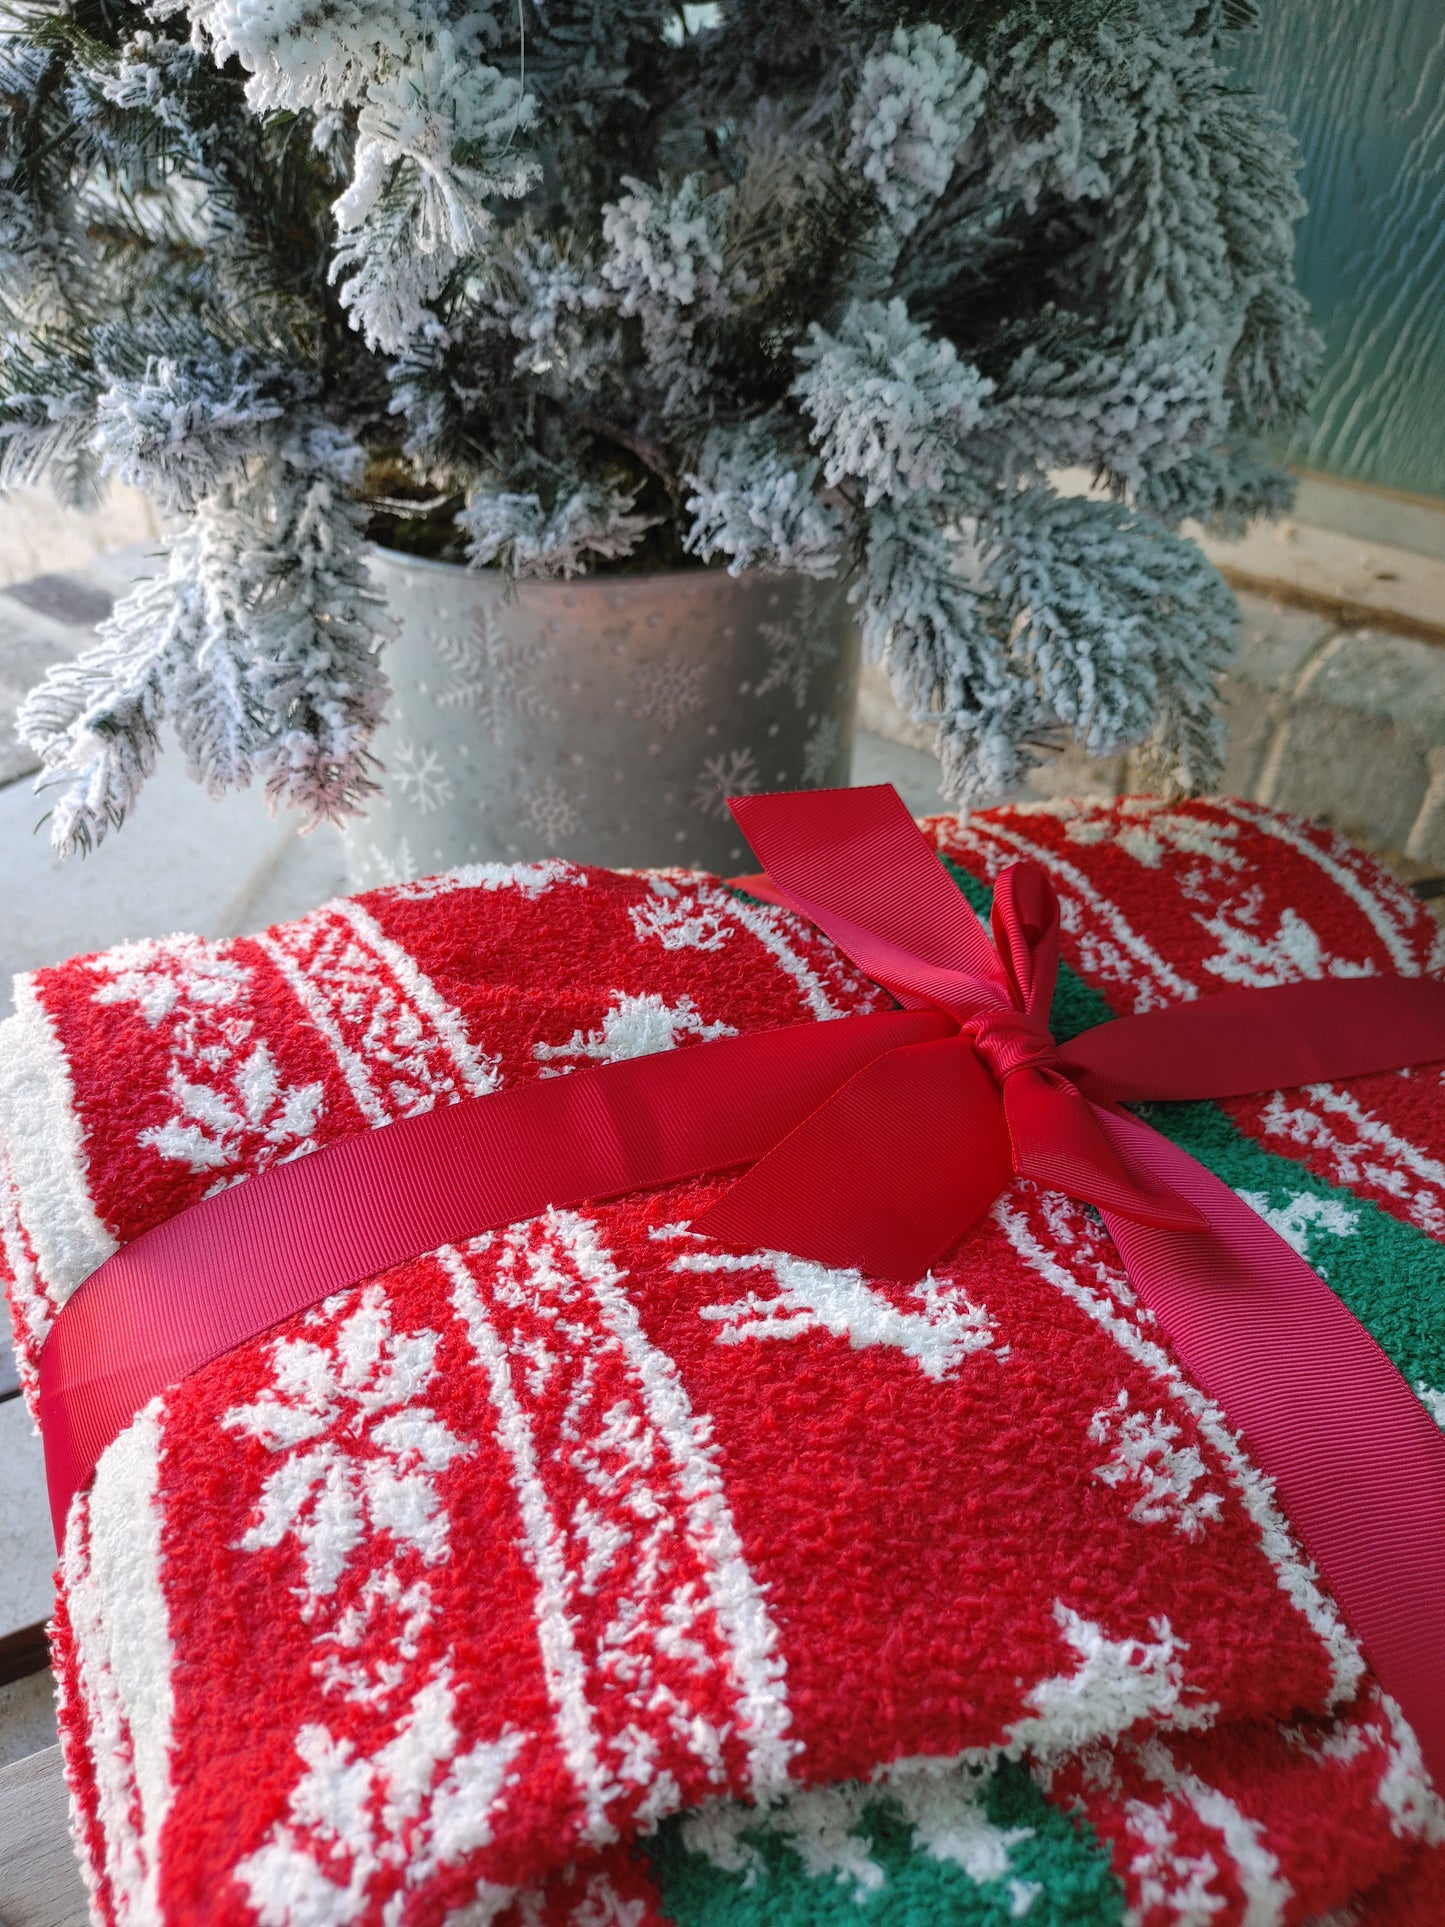 Moose & Christmas Tree Blanket